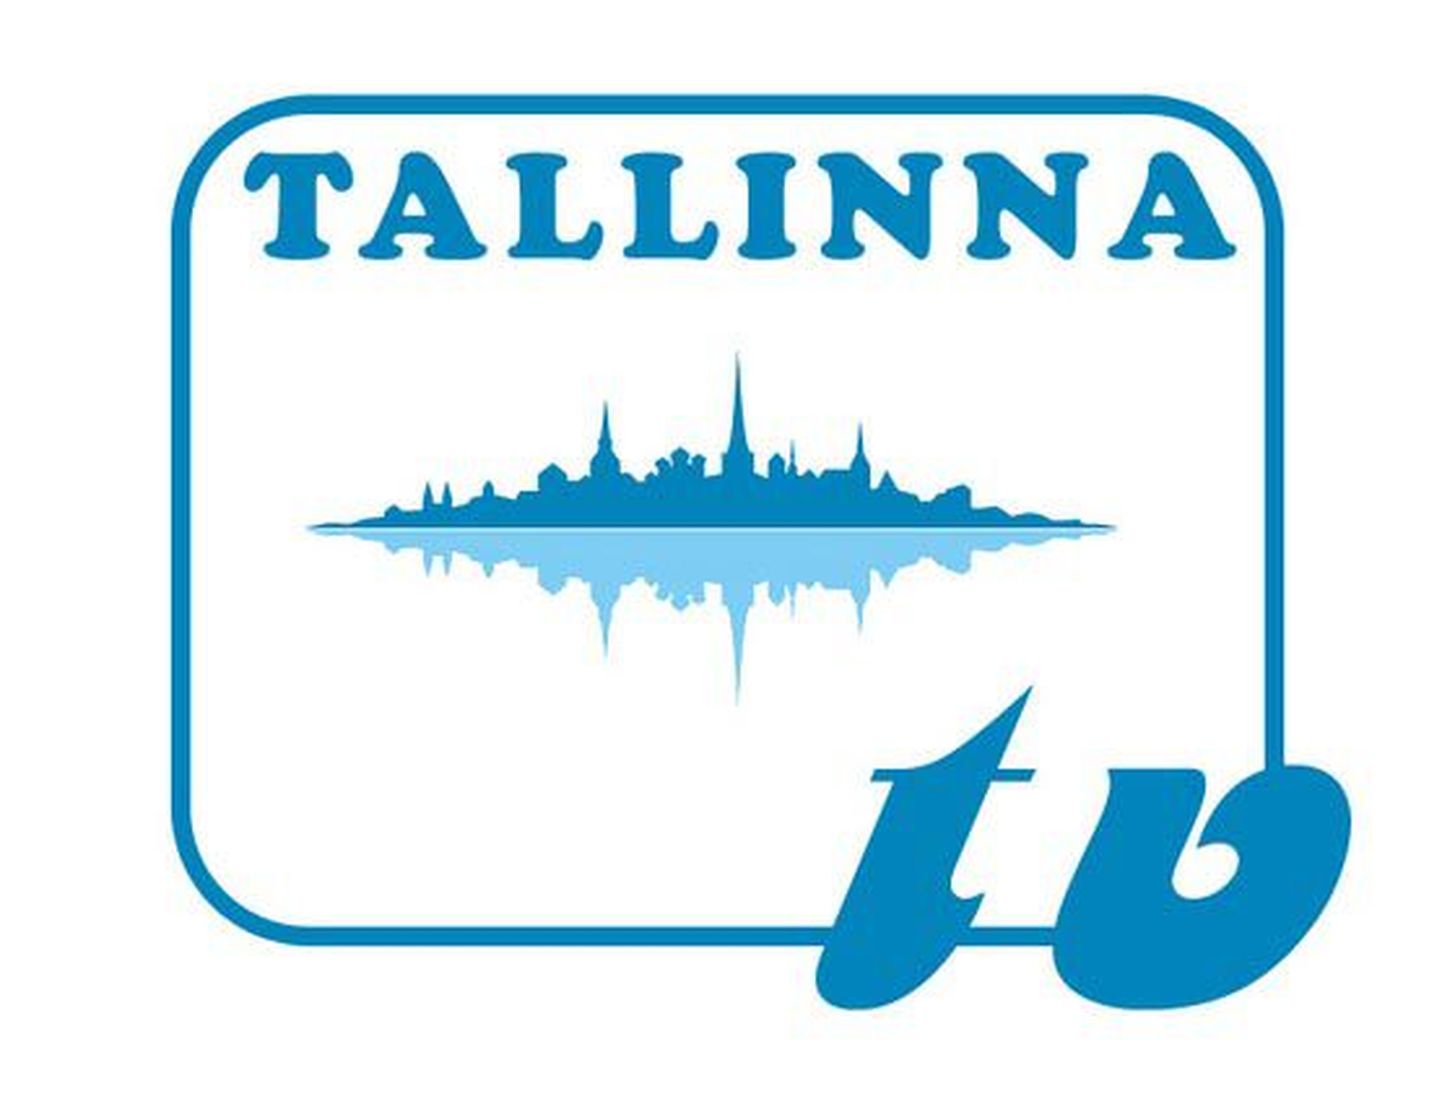 Pildil on Tallinna Televisiooni logo visand.